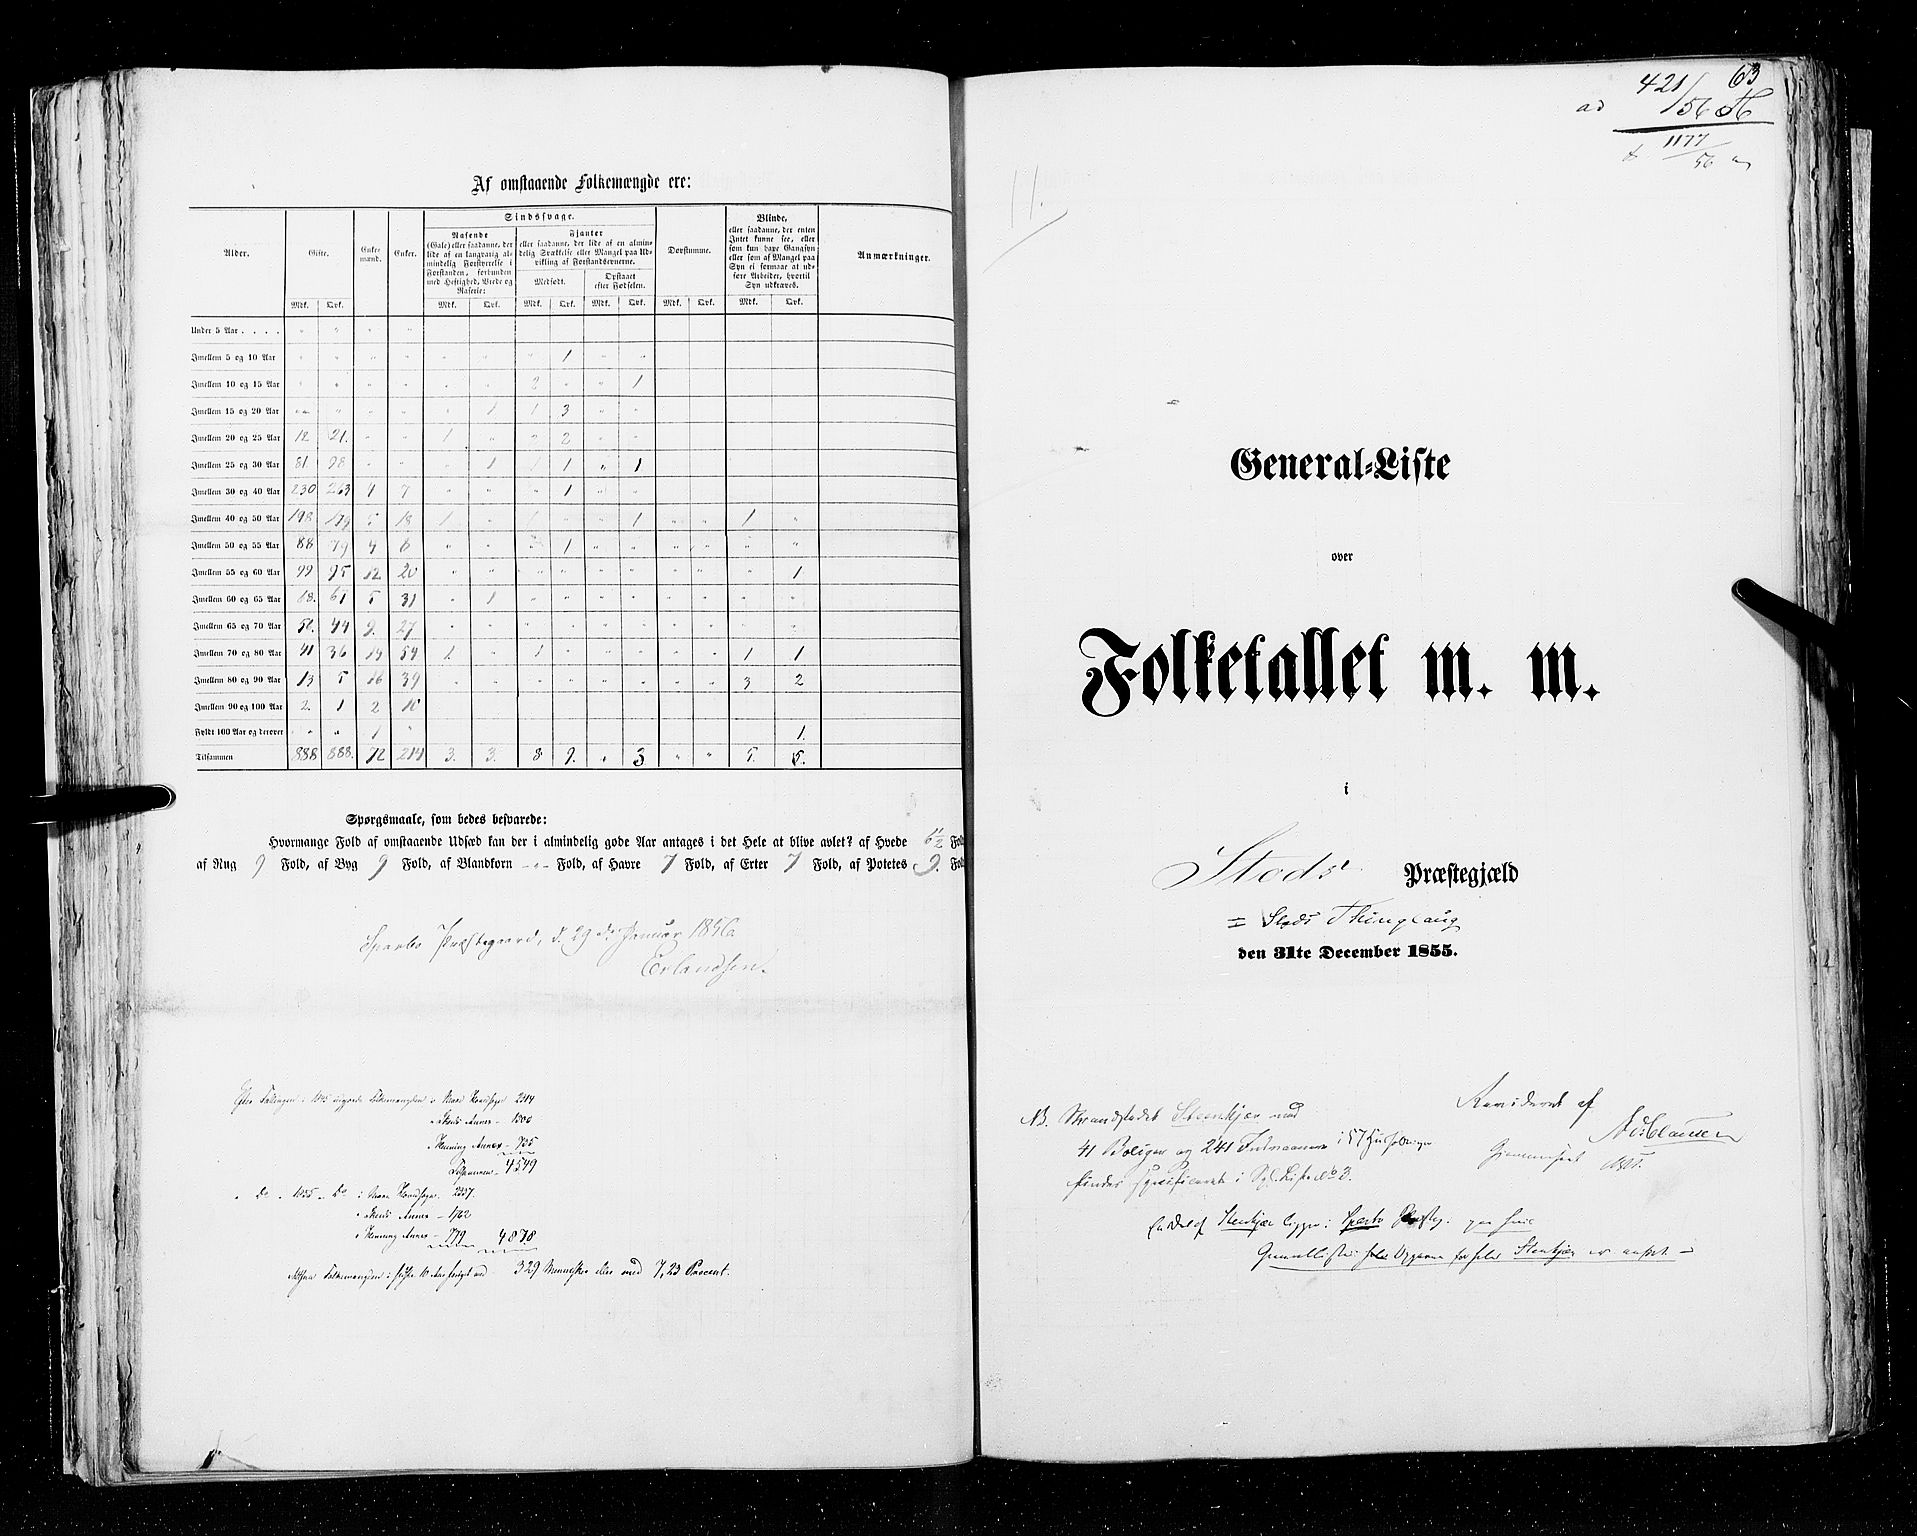 RA, Census 1855, vol. 6A: Nordre Trondhjem amt og Nordland amt, 1855, p. 63